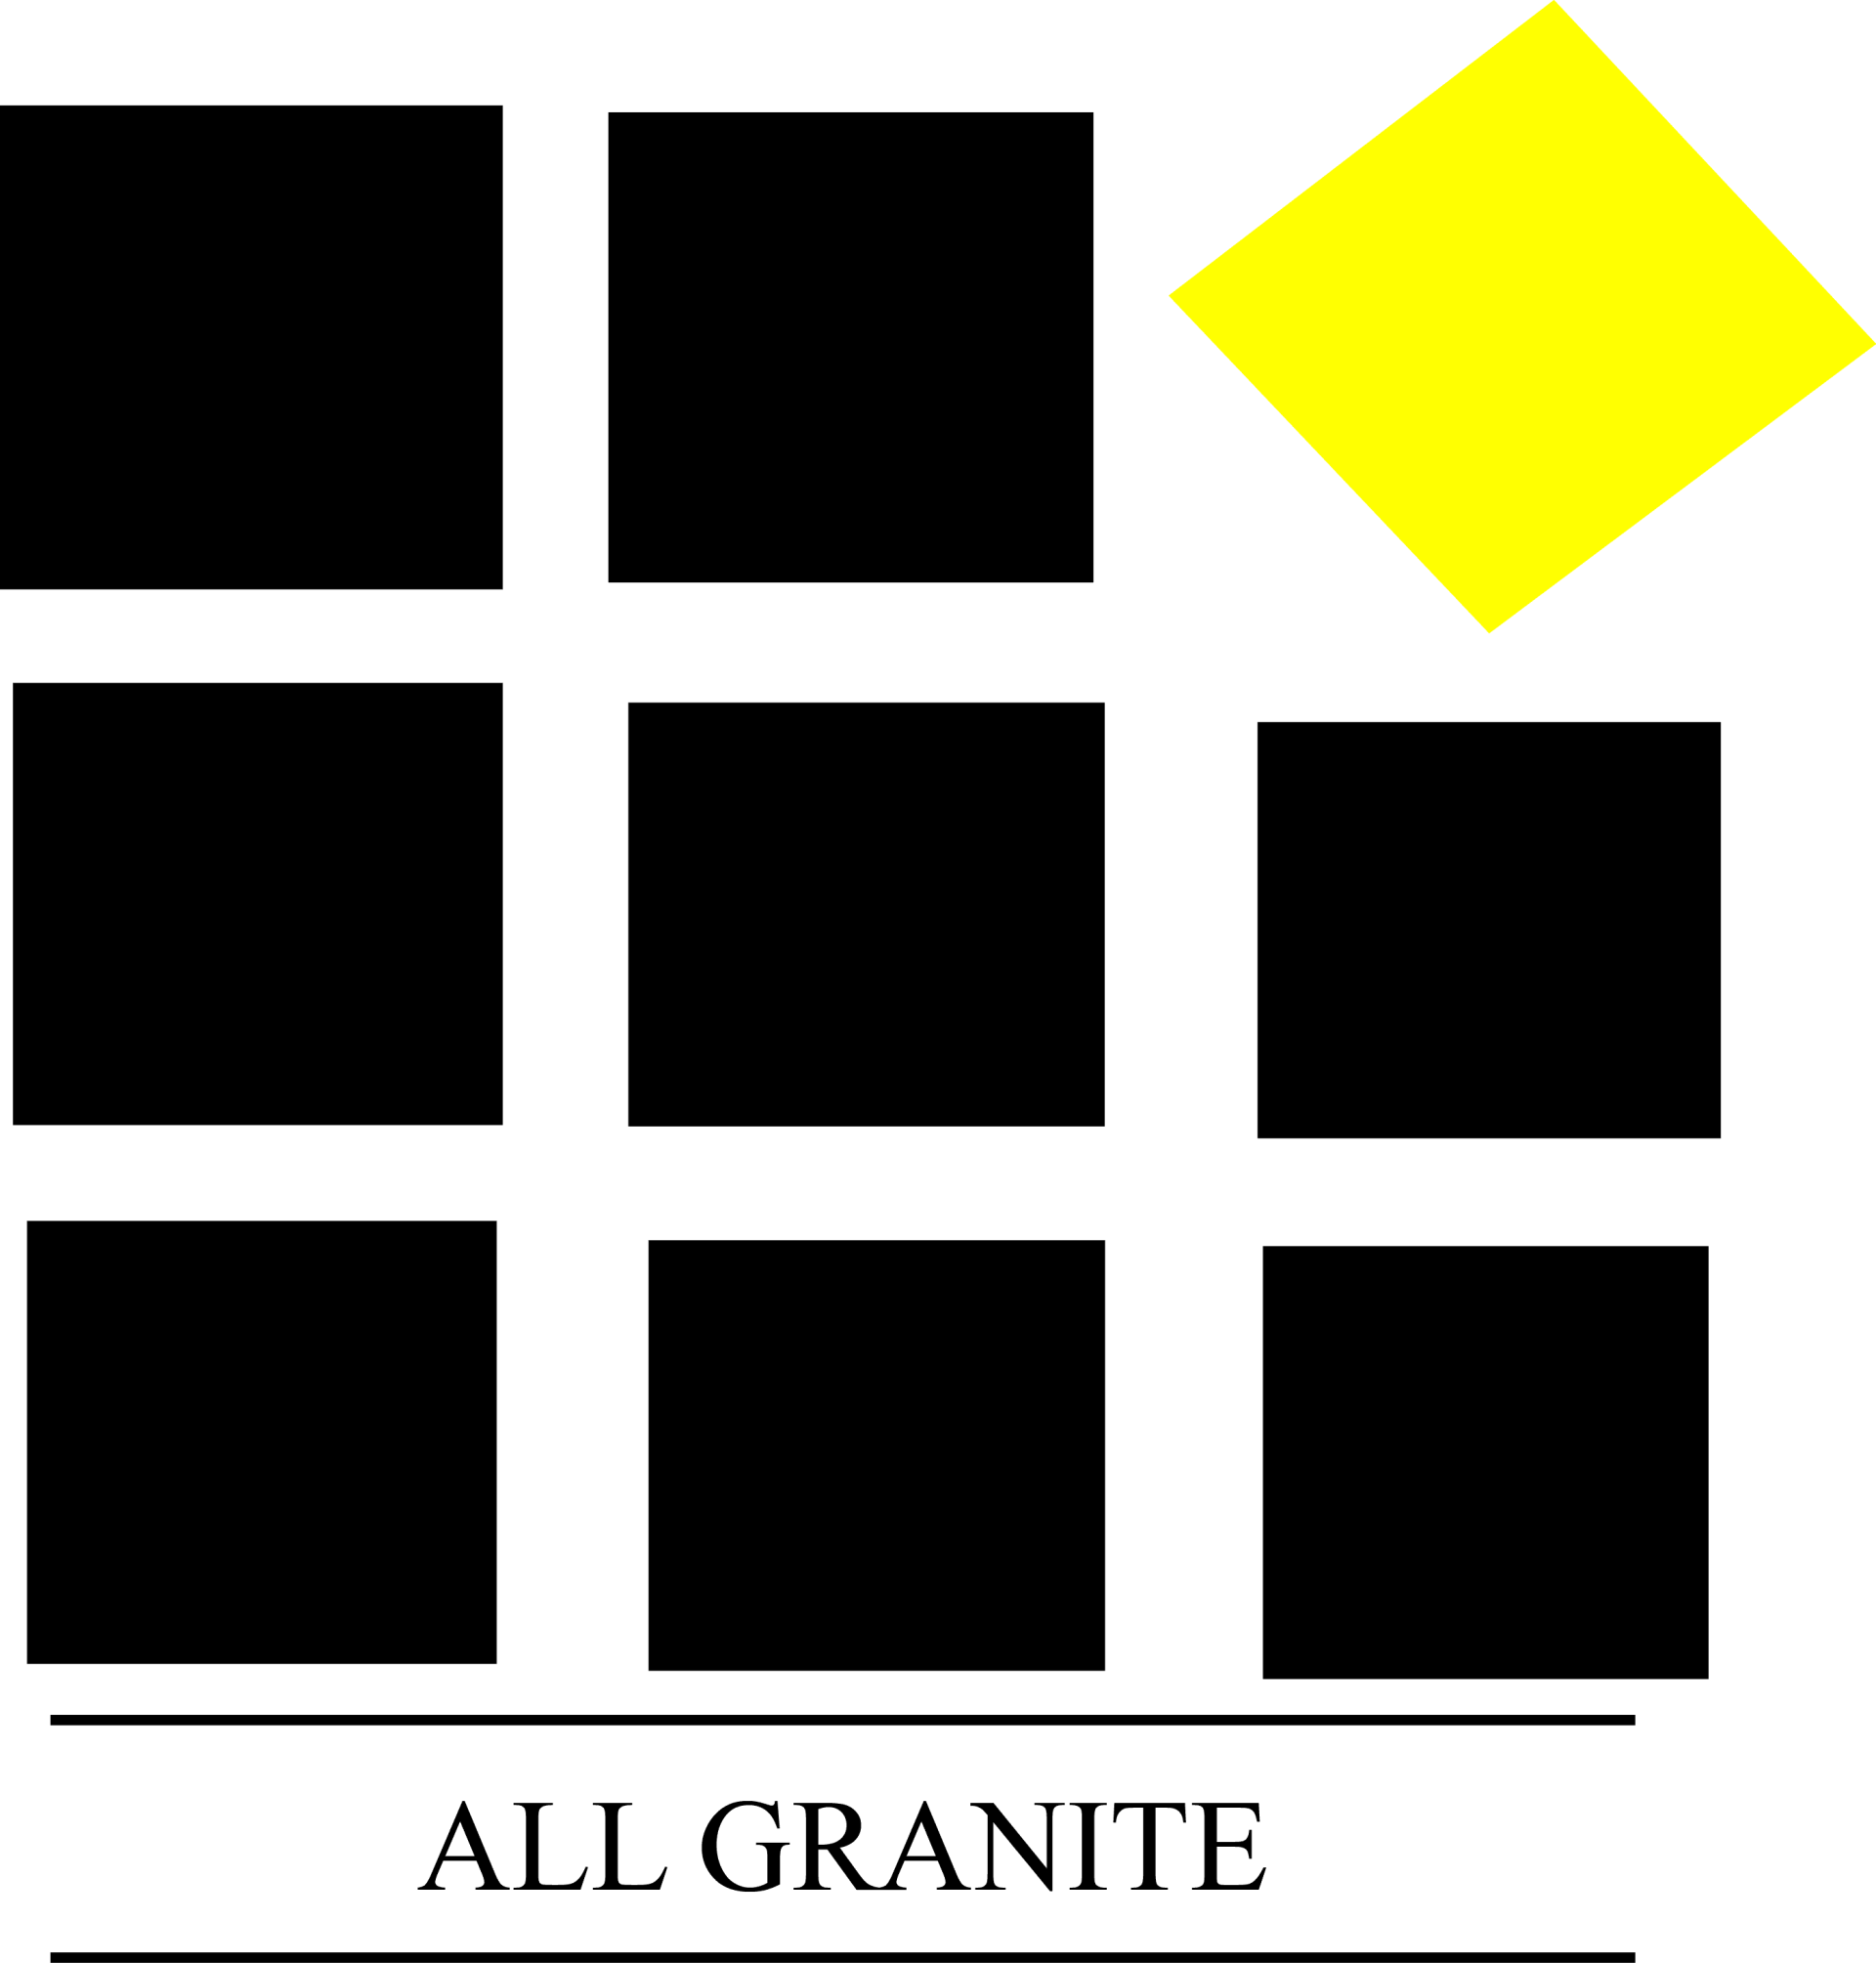 All Granite